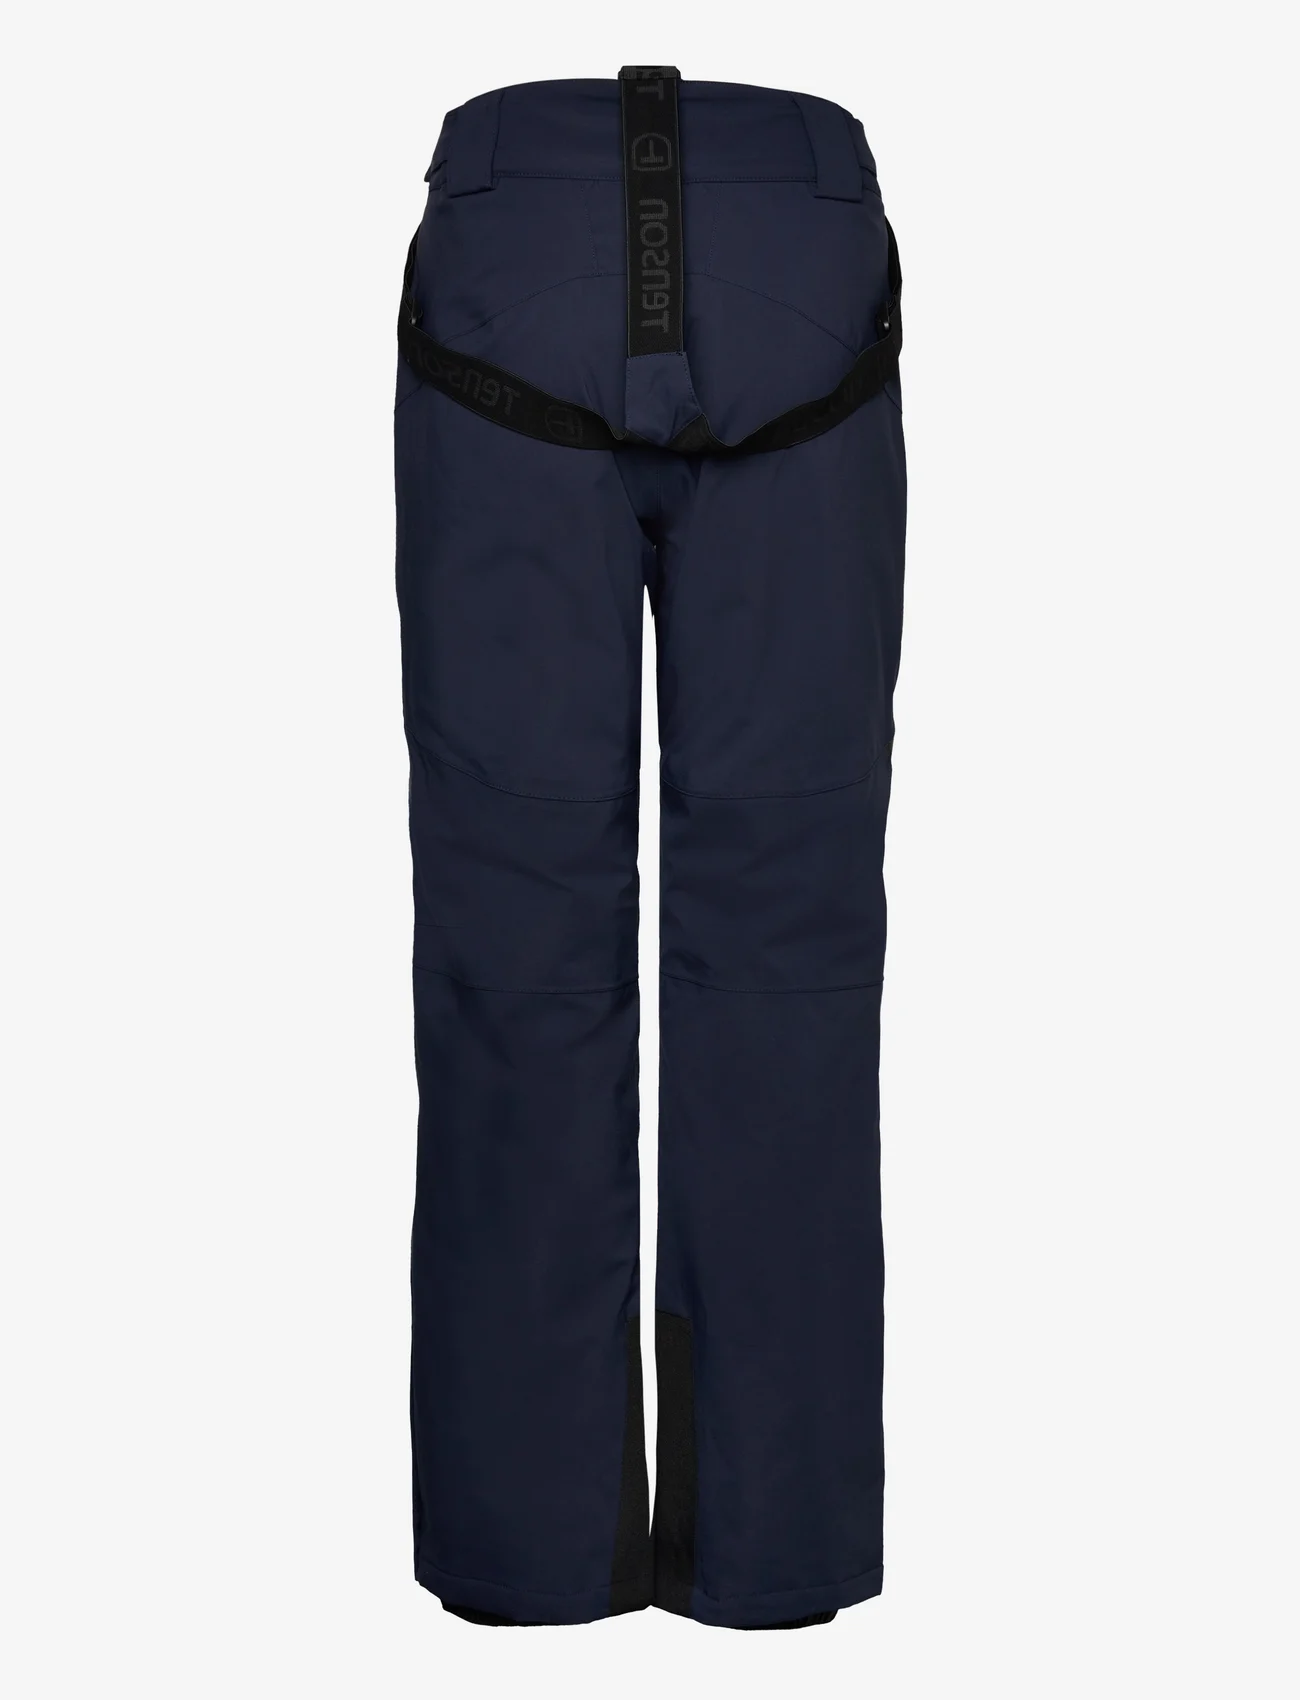 Tenson - Core Ski Pants Women - dark blue - 1